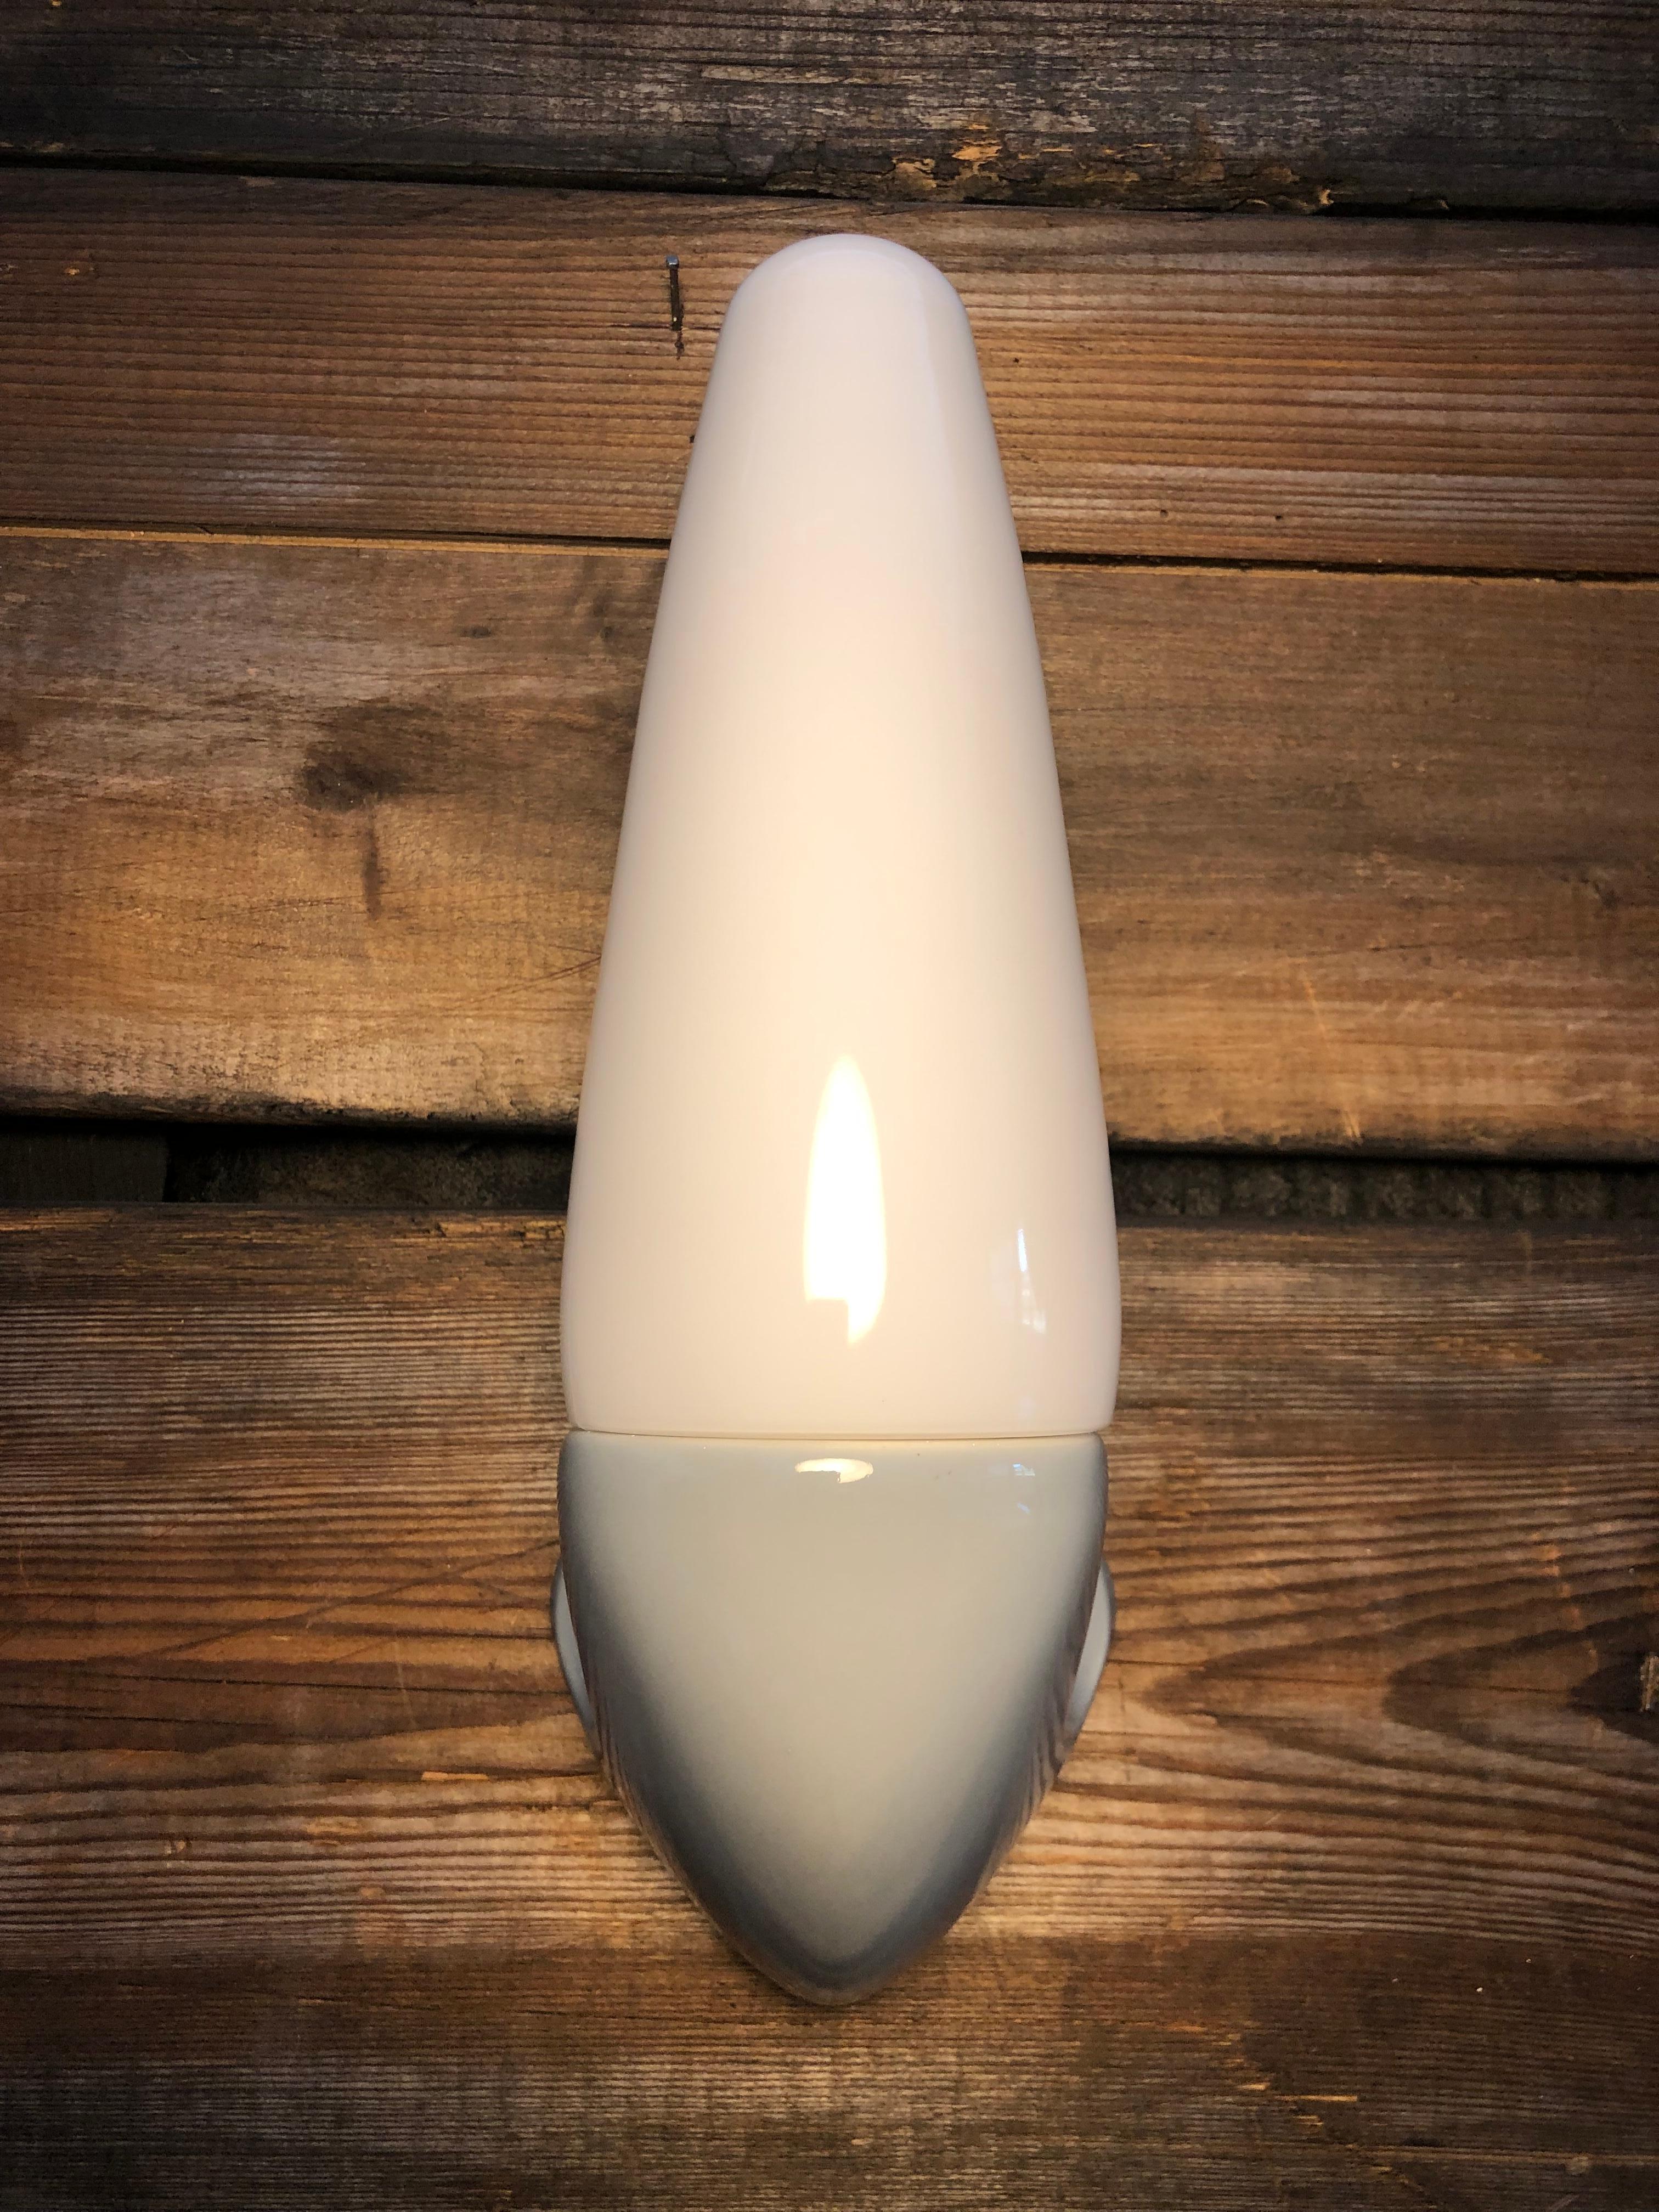 Vintage Ifö of Sweden Badezimmerlampen aus Keramik aus den 1960er Jahren in grau. 
Entworfen von Sigvard Bernadotte. 
Schirme aus Opalglas. 
Keramische Glühbirnenfassungen für eine E14-Glühbirne
Die Lampen können als Aufwärts- oder Abwärtsleuchten